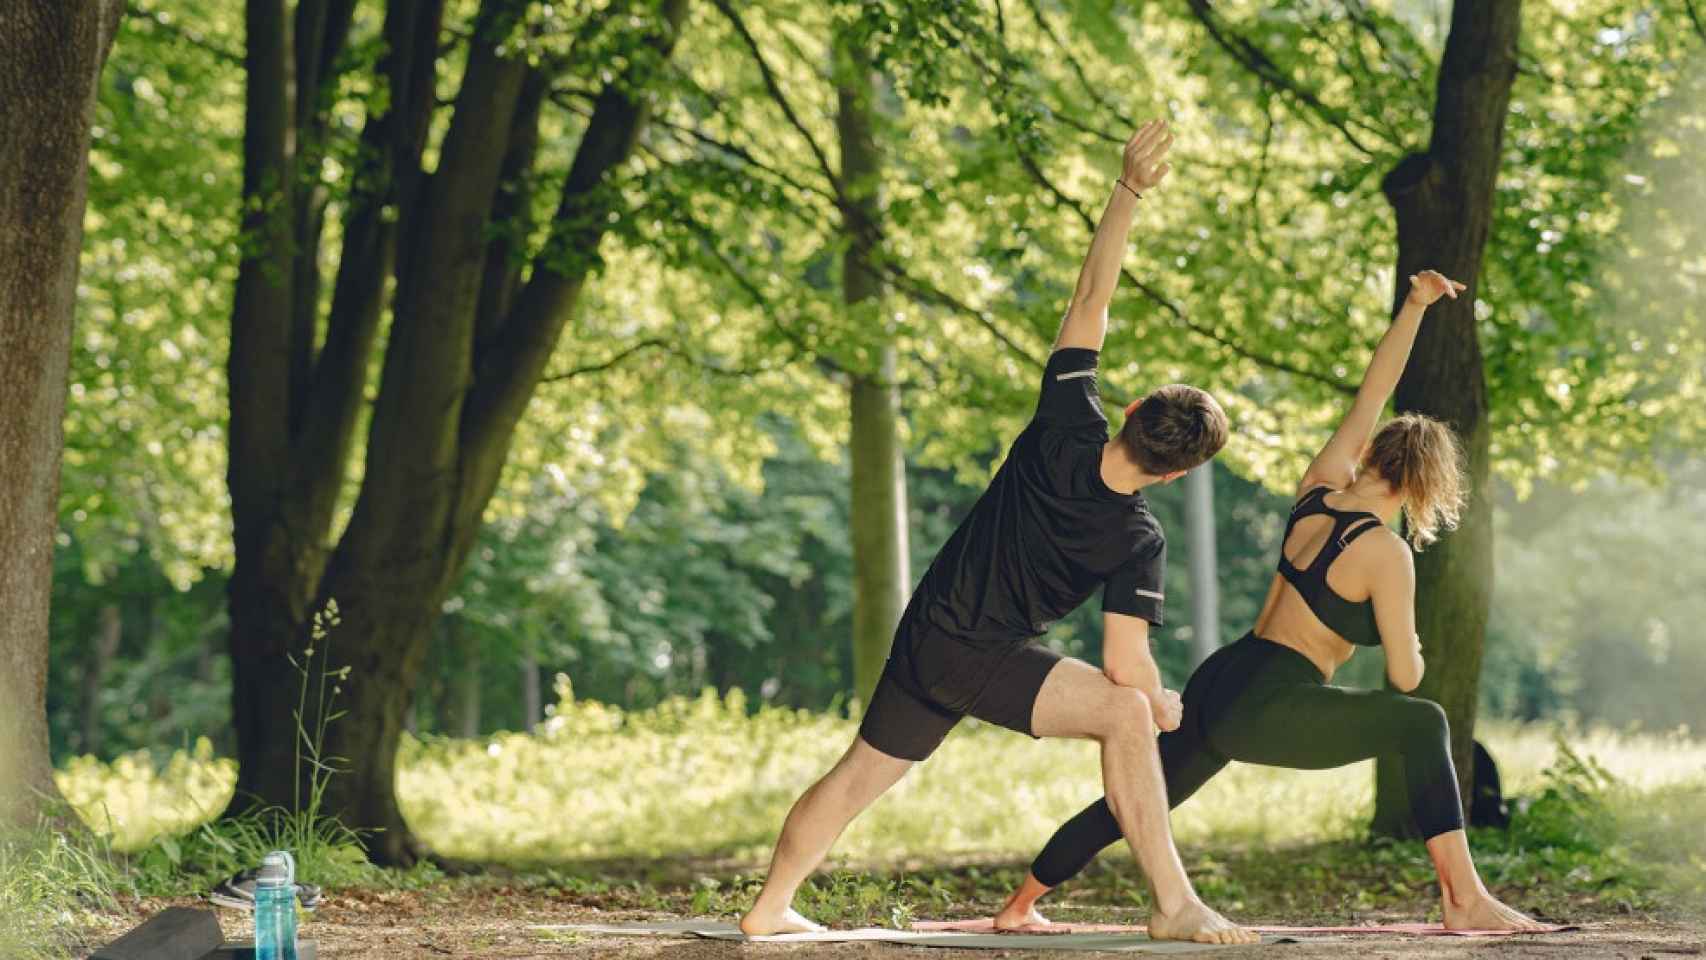 Cómo practicar yoga podría ayudarte a fortalecer y compartir tu fe